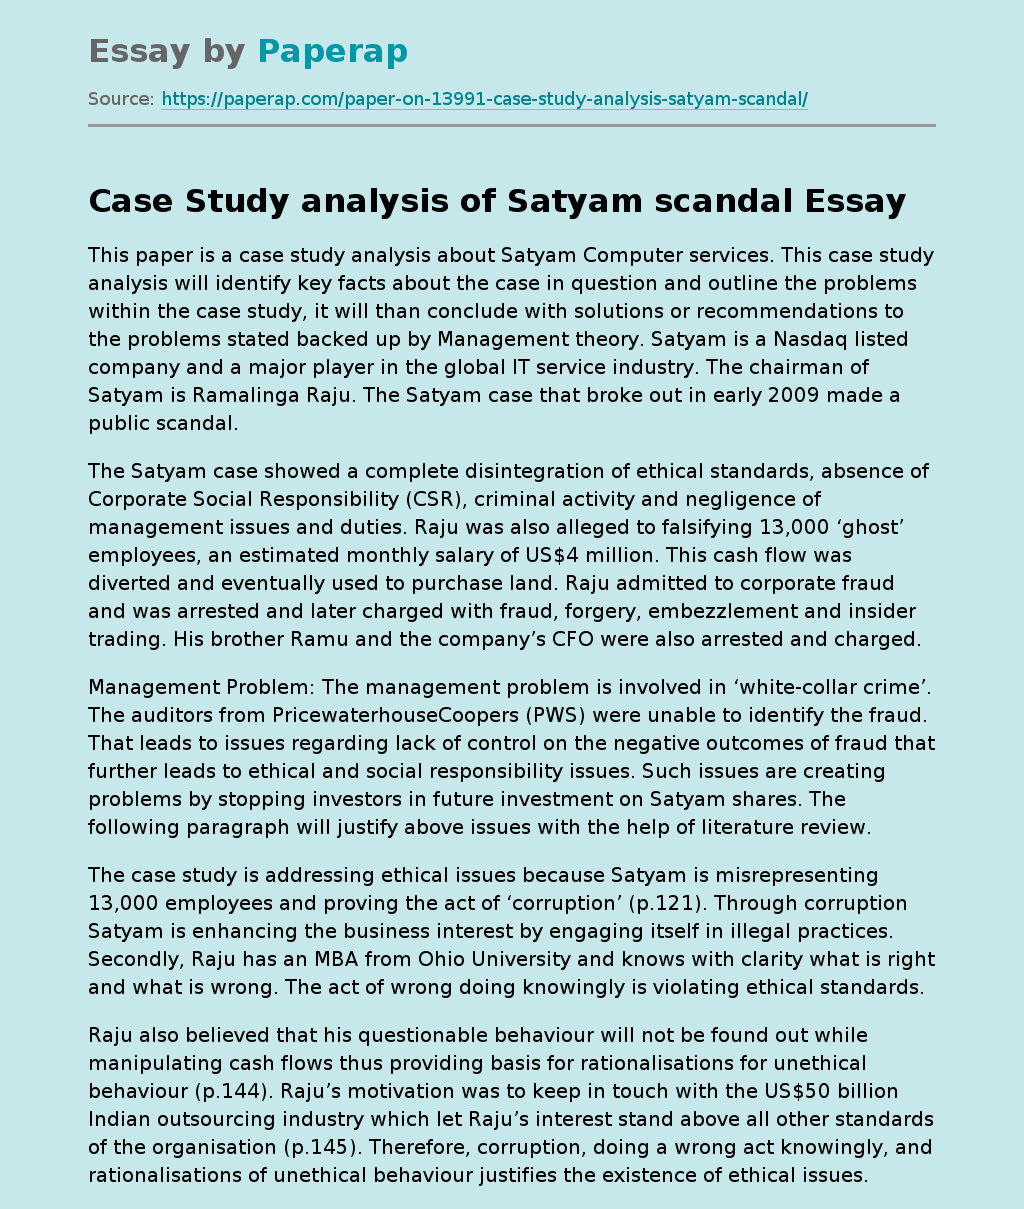 Case Study analysis of Satyam scandal